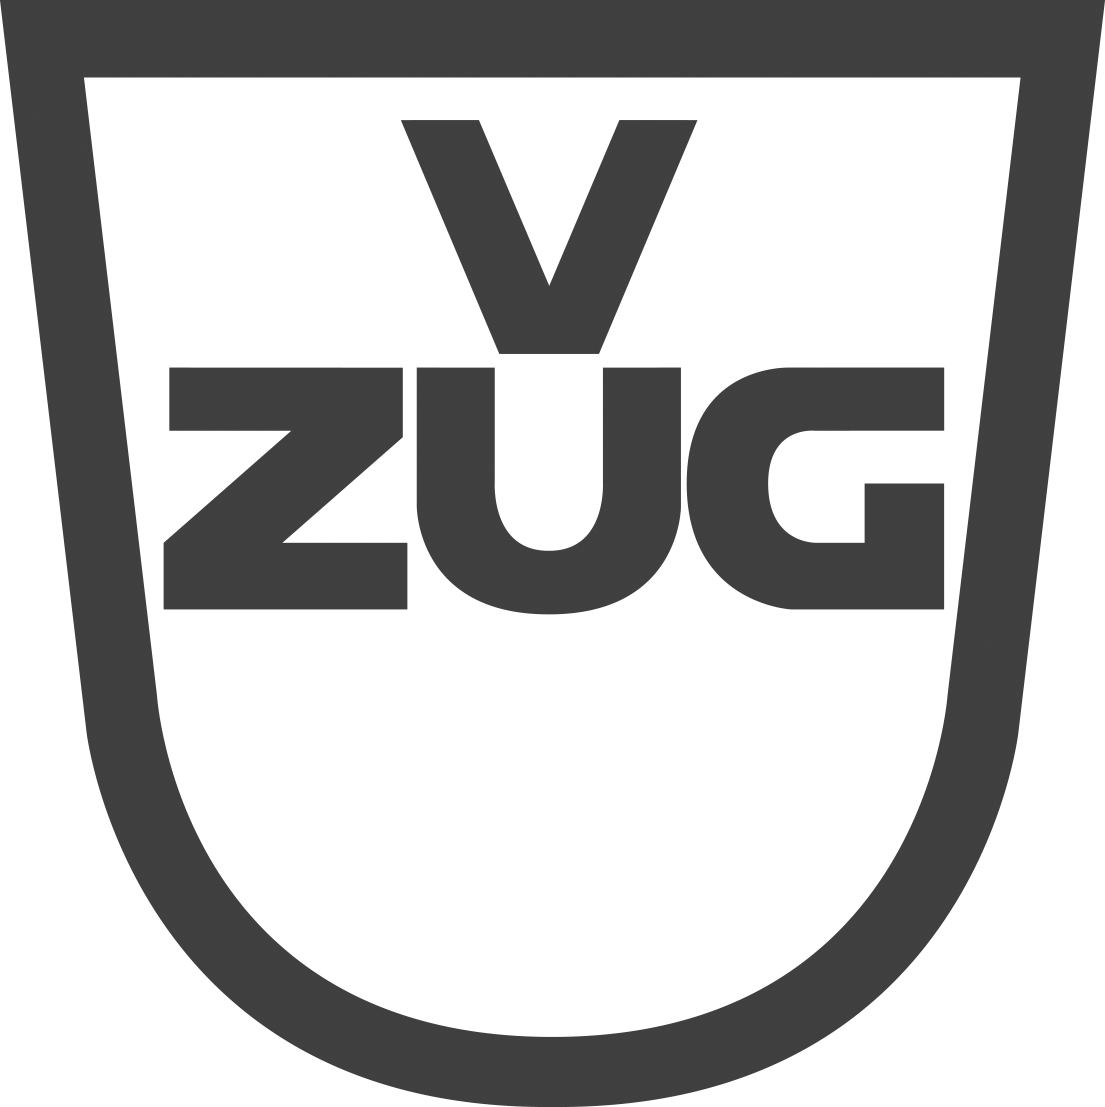 V-ZUG